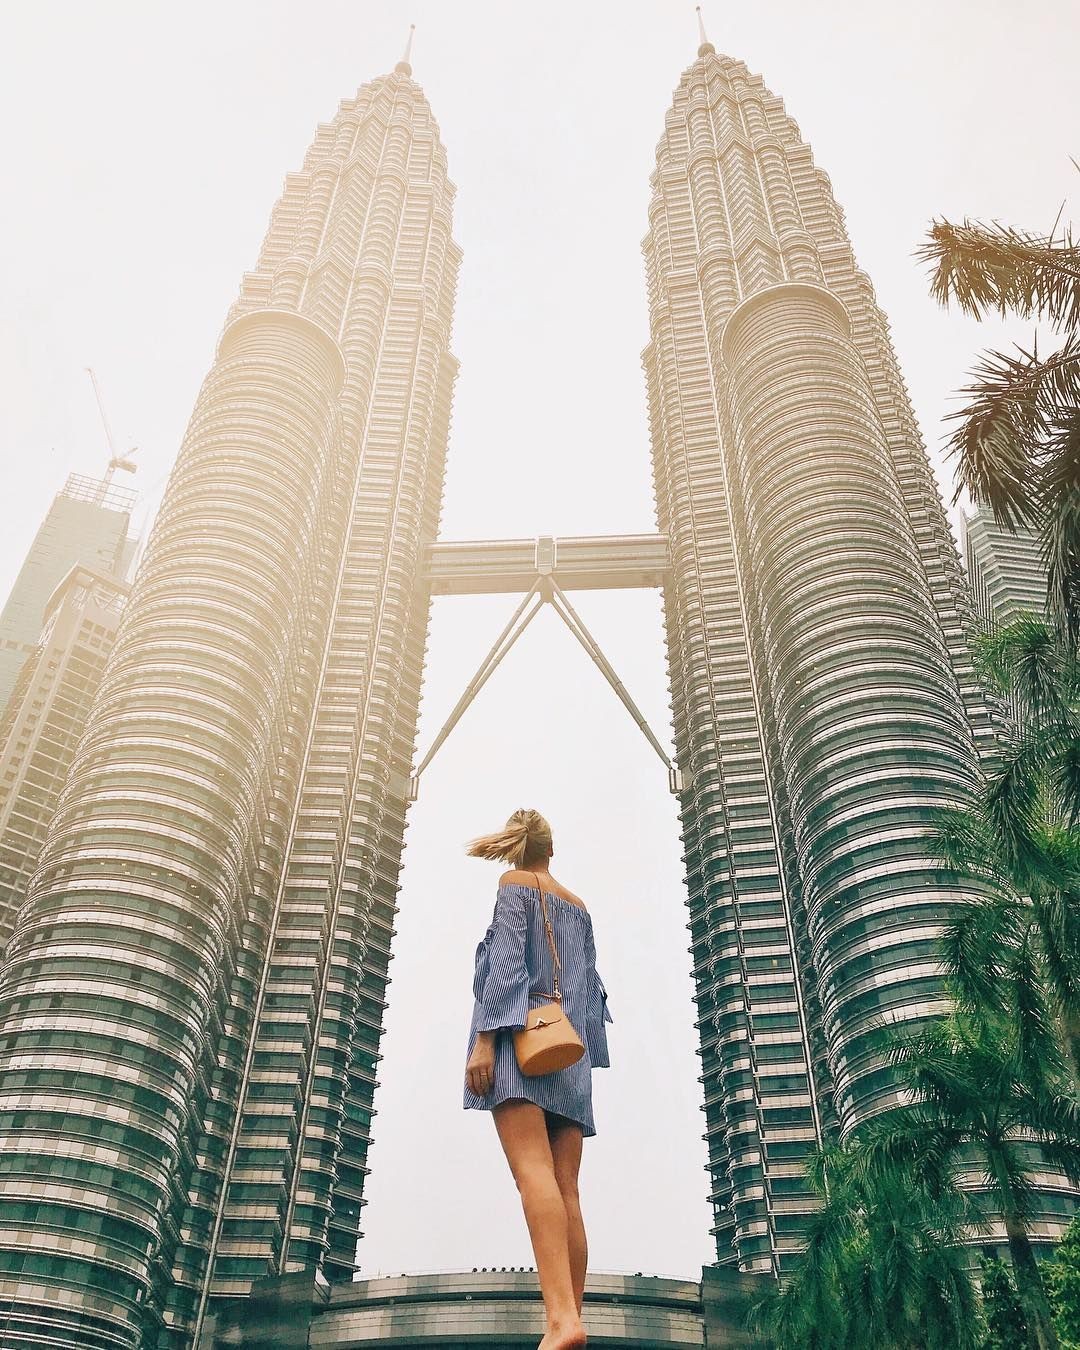 Chụp hình tháp đôi Petronas